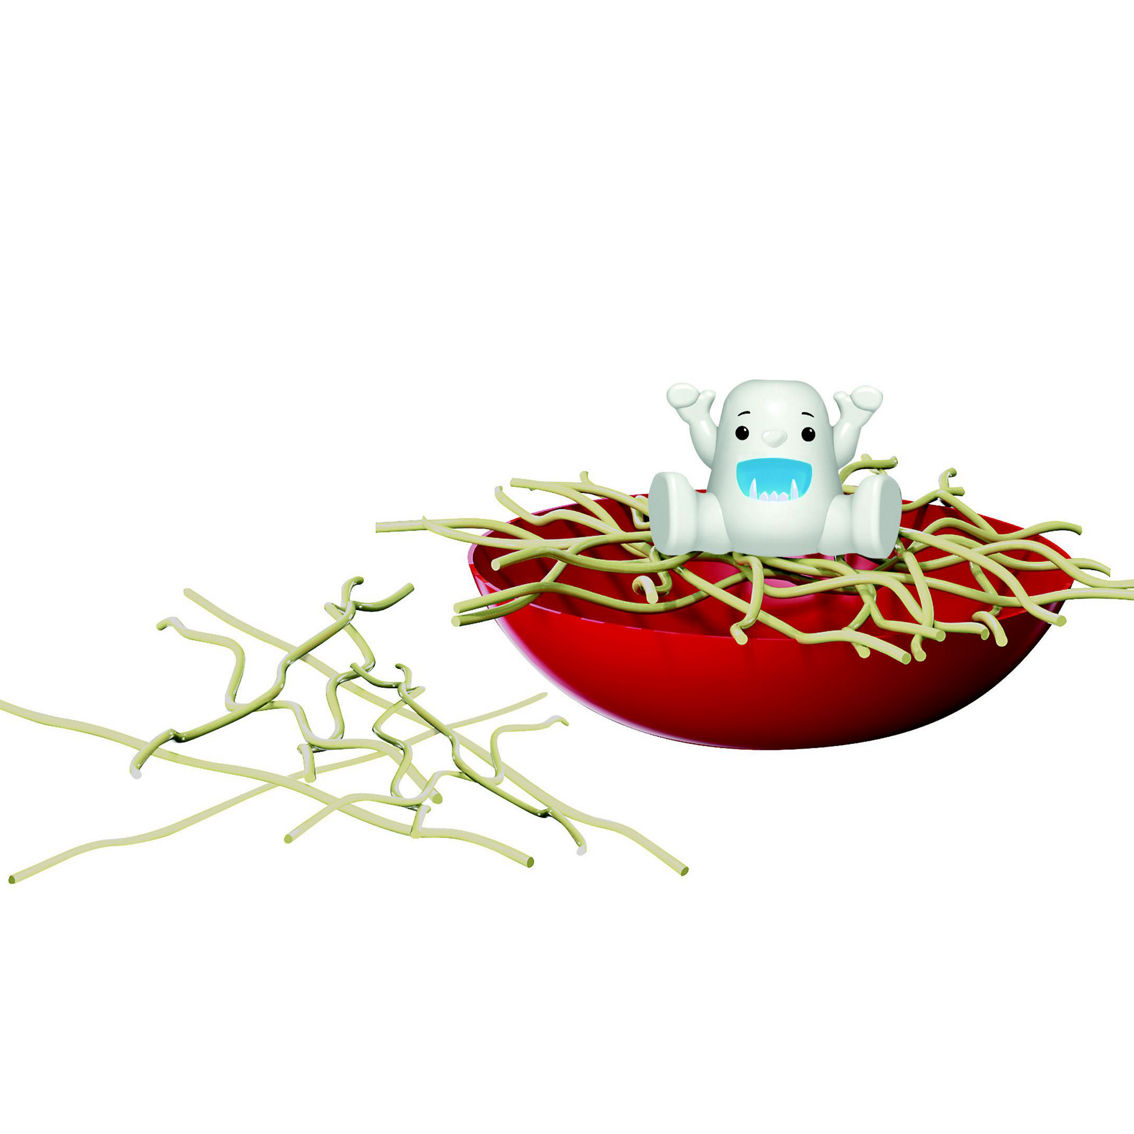 PlayMonster Yeti in My Spaghetti - Image 2 of 2